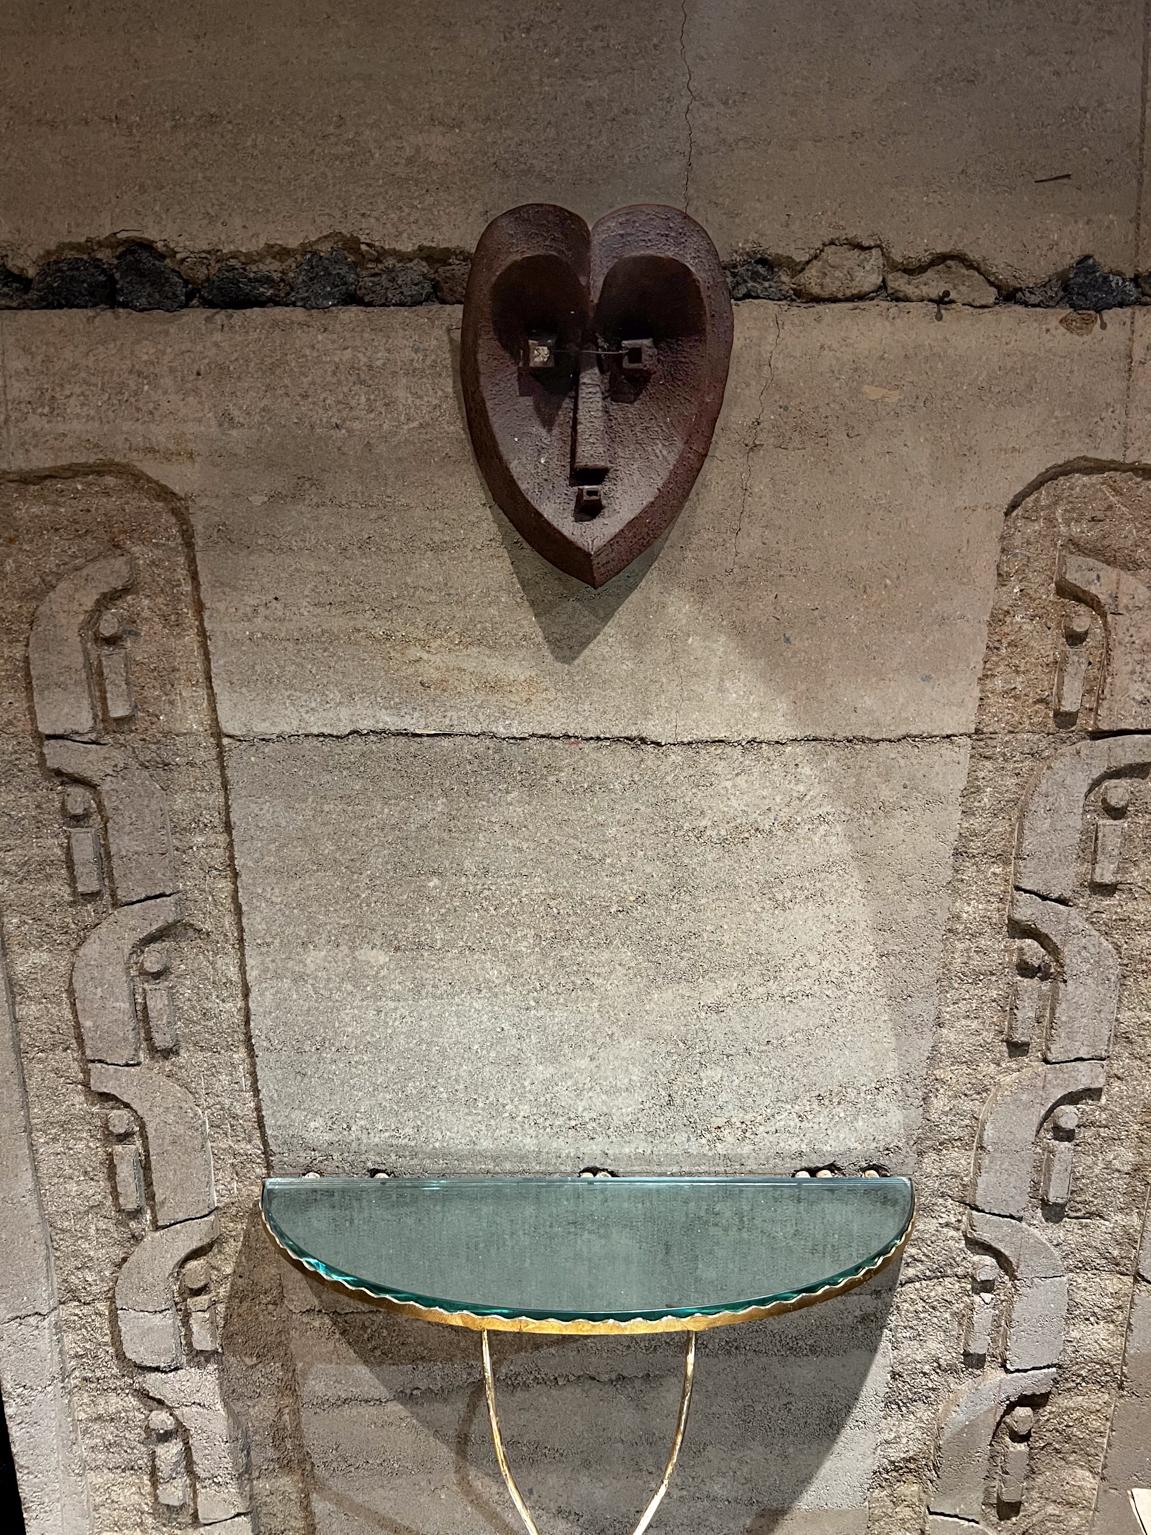 1990 Masque de cérémonie en métal Coeur en fer Design cubiste
un masque de cérémonie en métal fait sur mesure, en fer avec une patine vintage.
Un cœur de construction unique mélangé à des formes cubistes.
11,5 la x 14,5 haut x 6,25 la
État d'origine